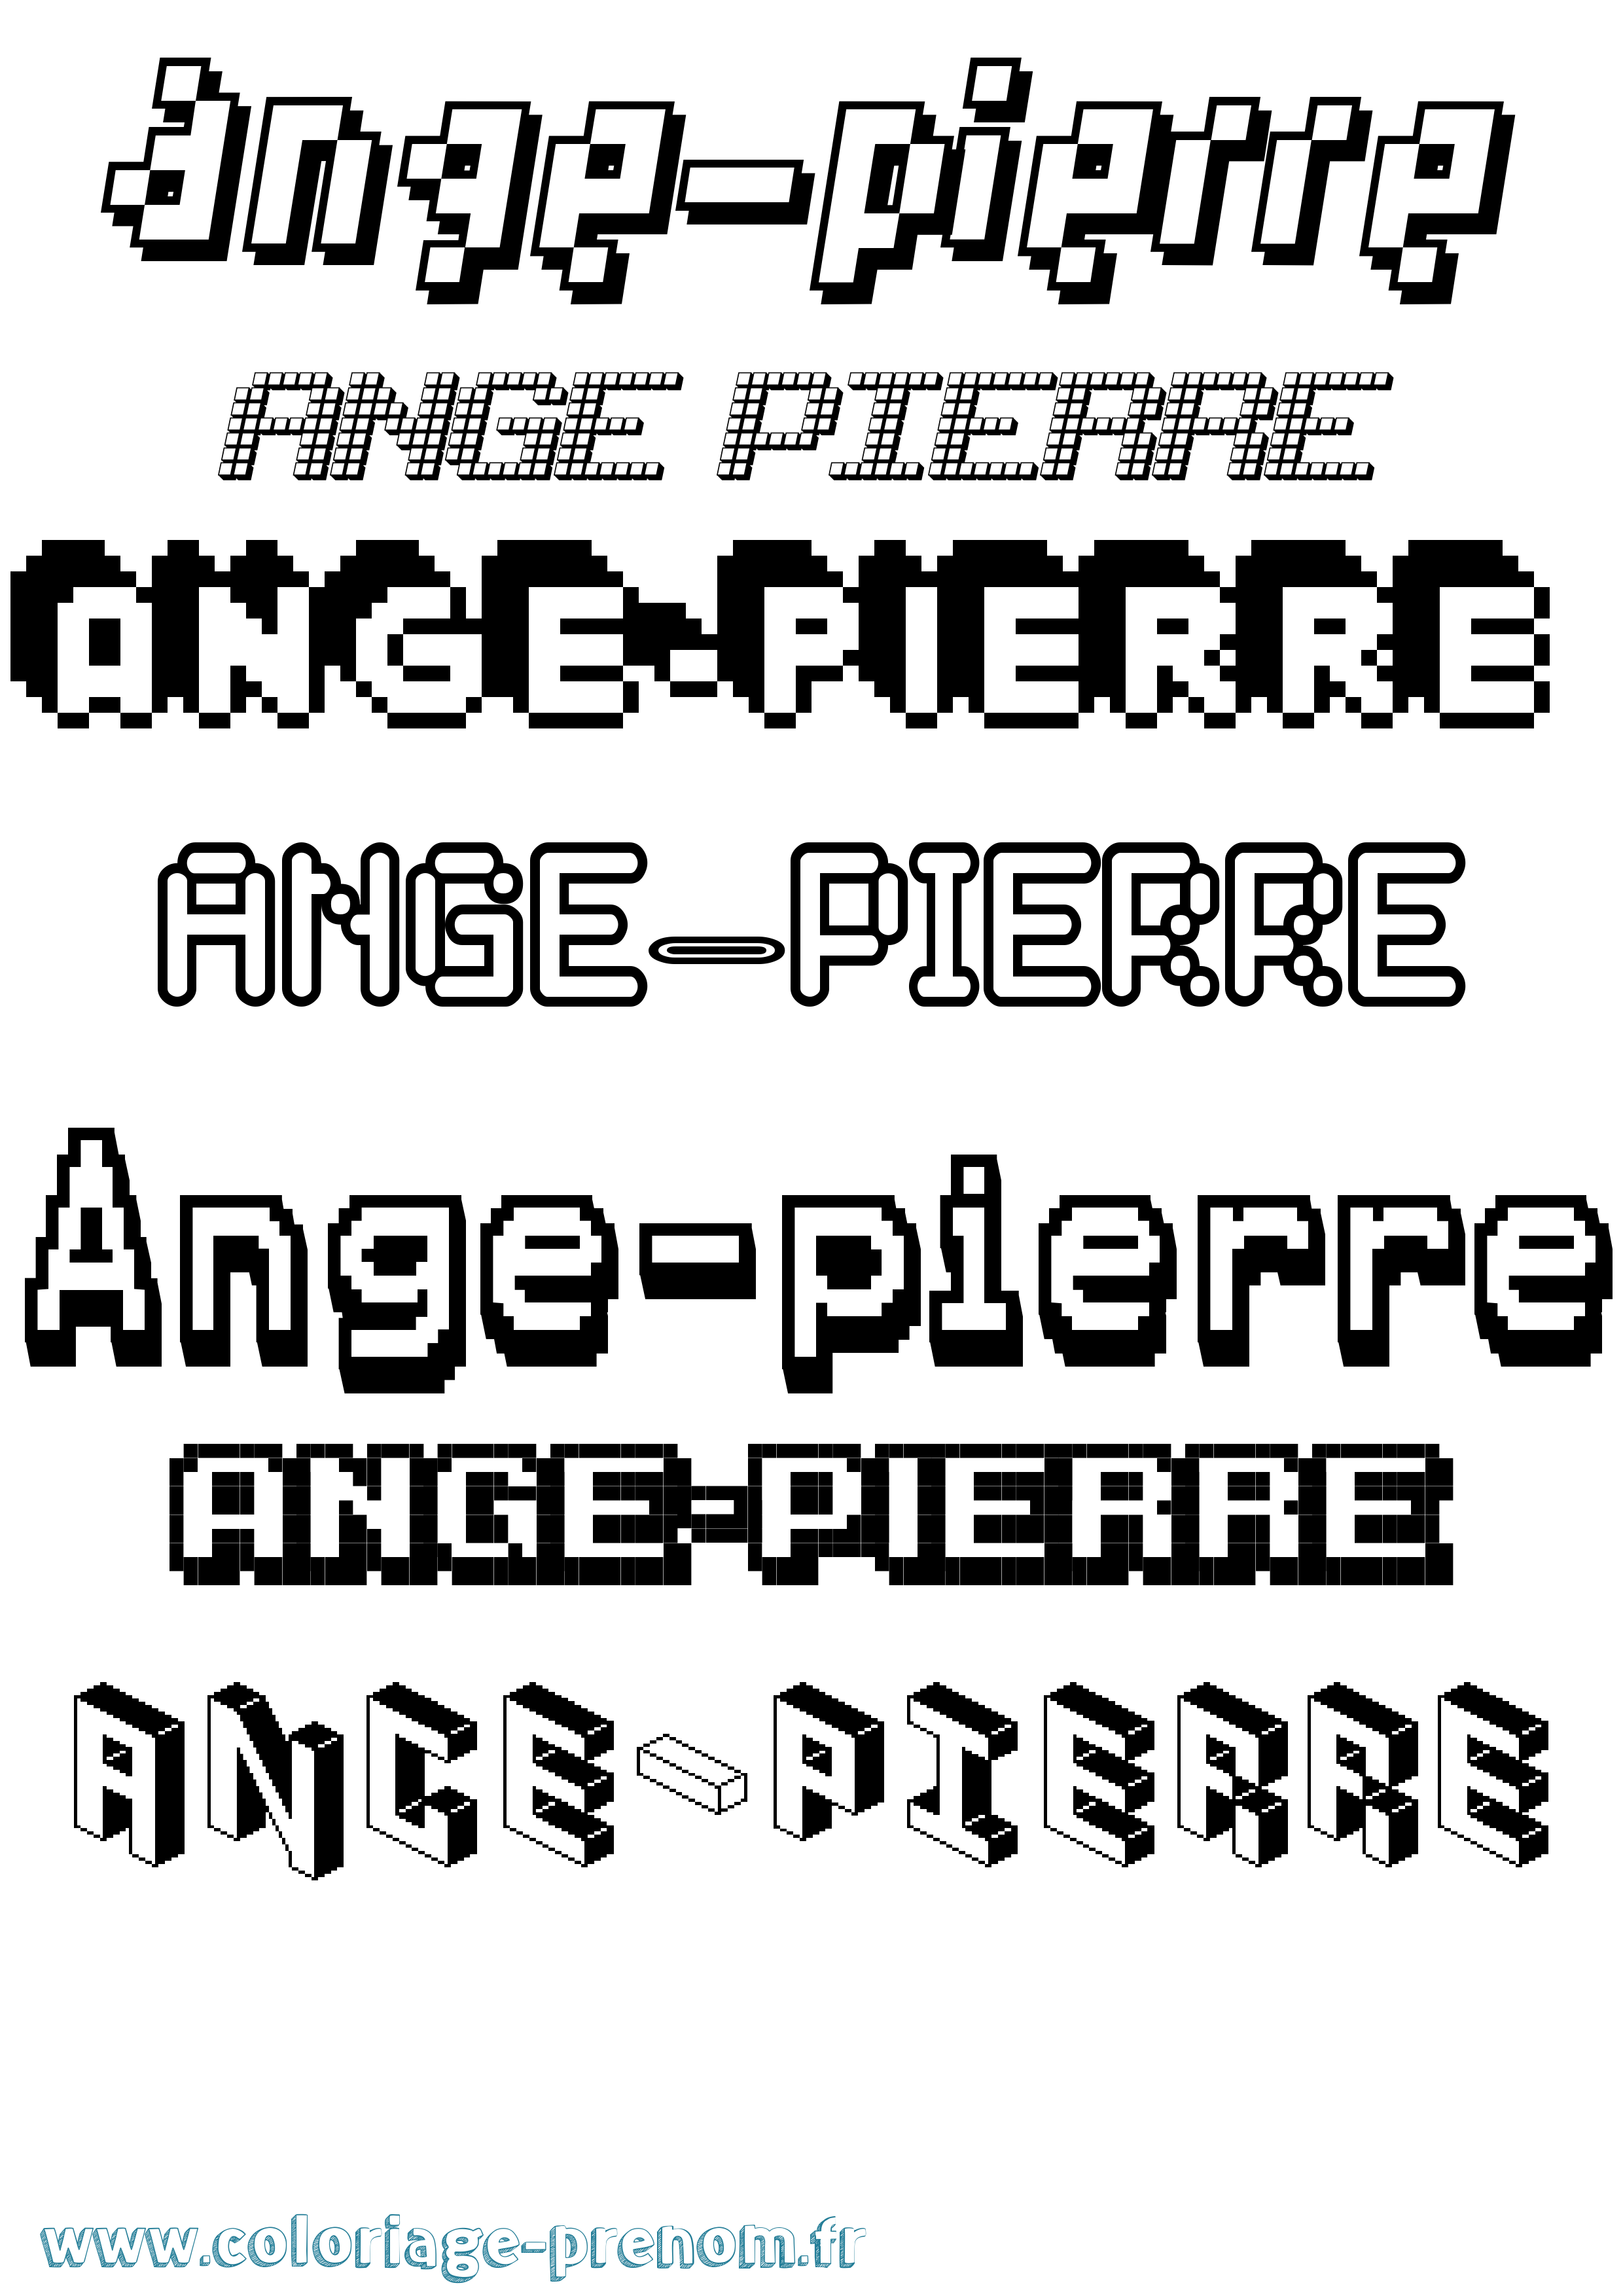 Coloriage prénom Ange-Pierre Pixel